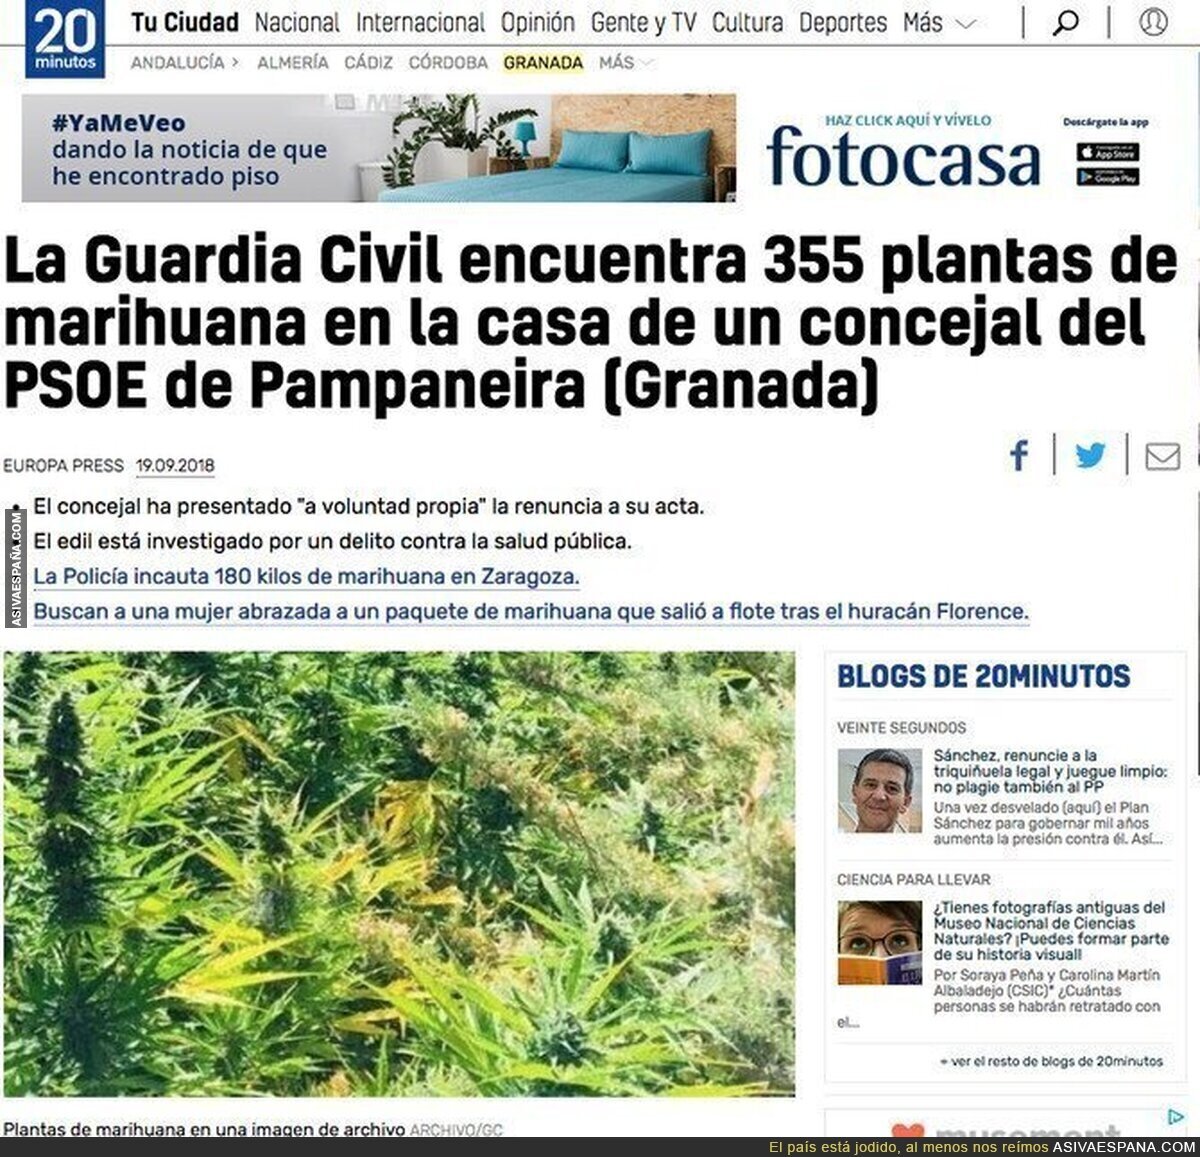 Un concejal del PSOE de una localidad de Granada tenía 355 planteas de marihuana en su casa